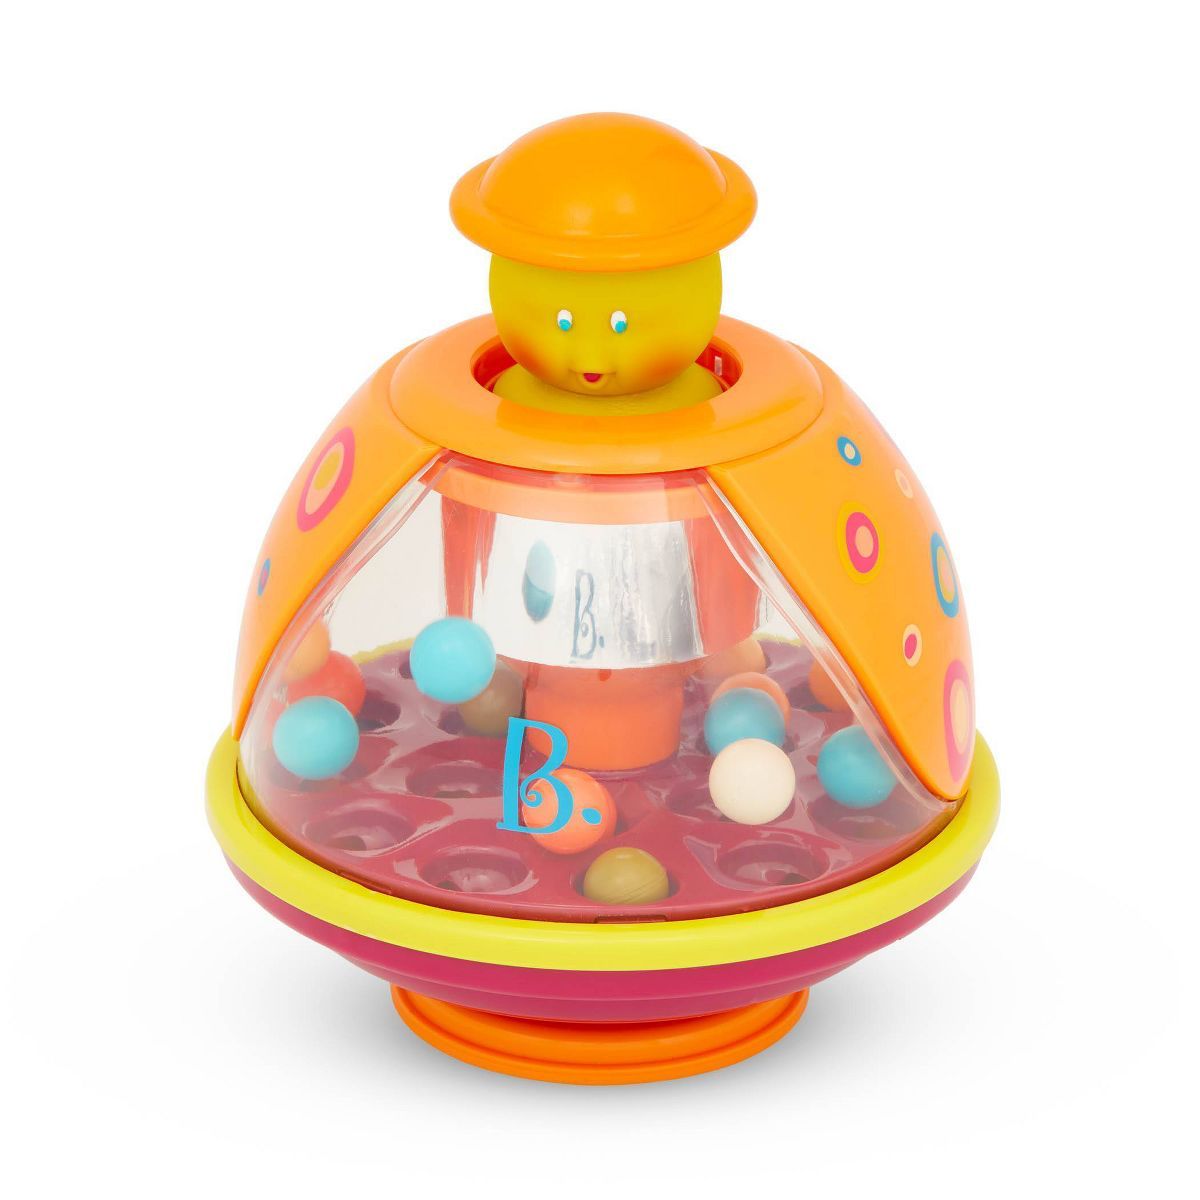 B. toys Ladybug Ball Popping Toy Poppitoppy | Target